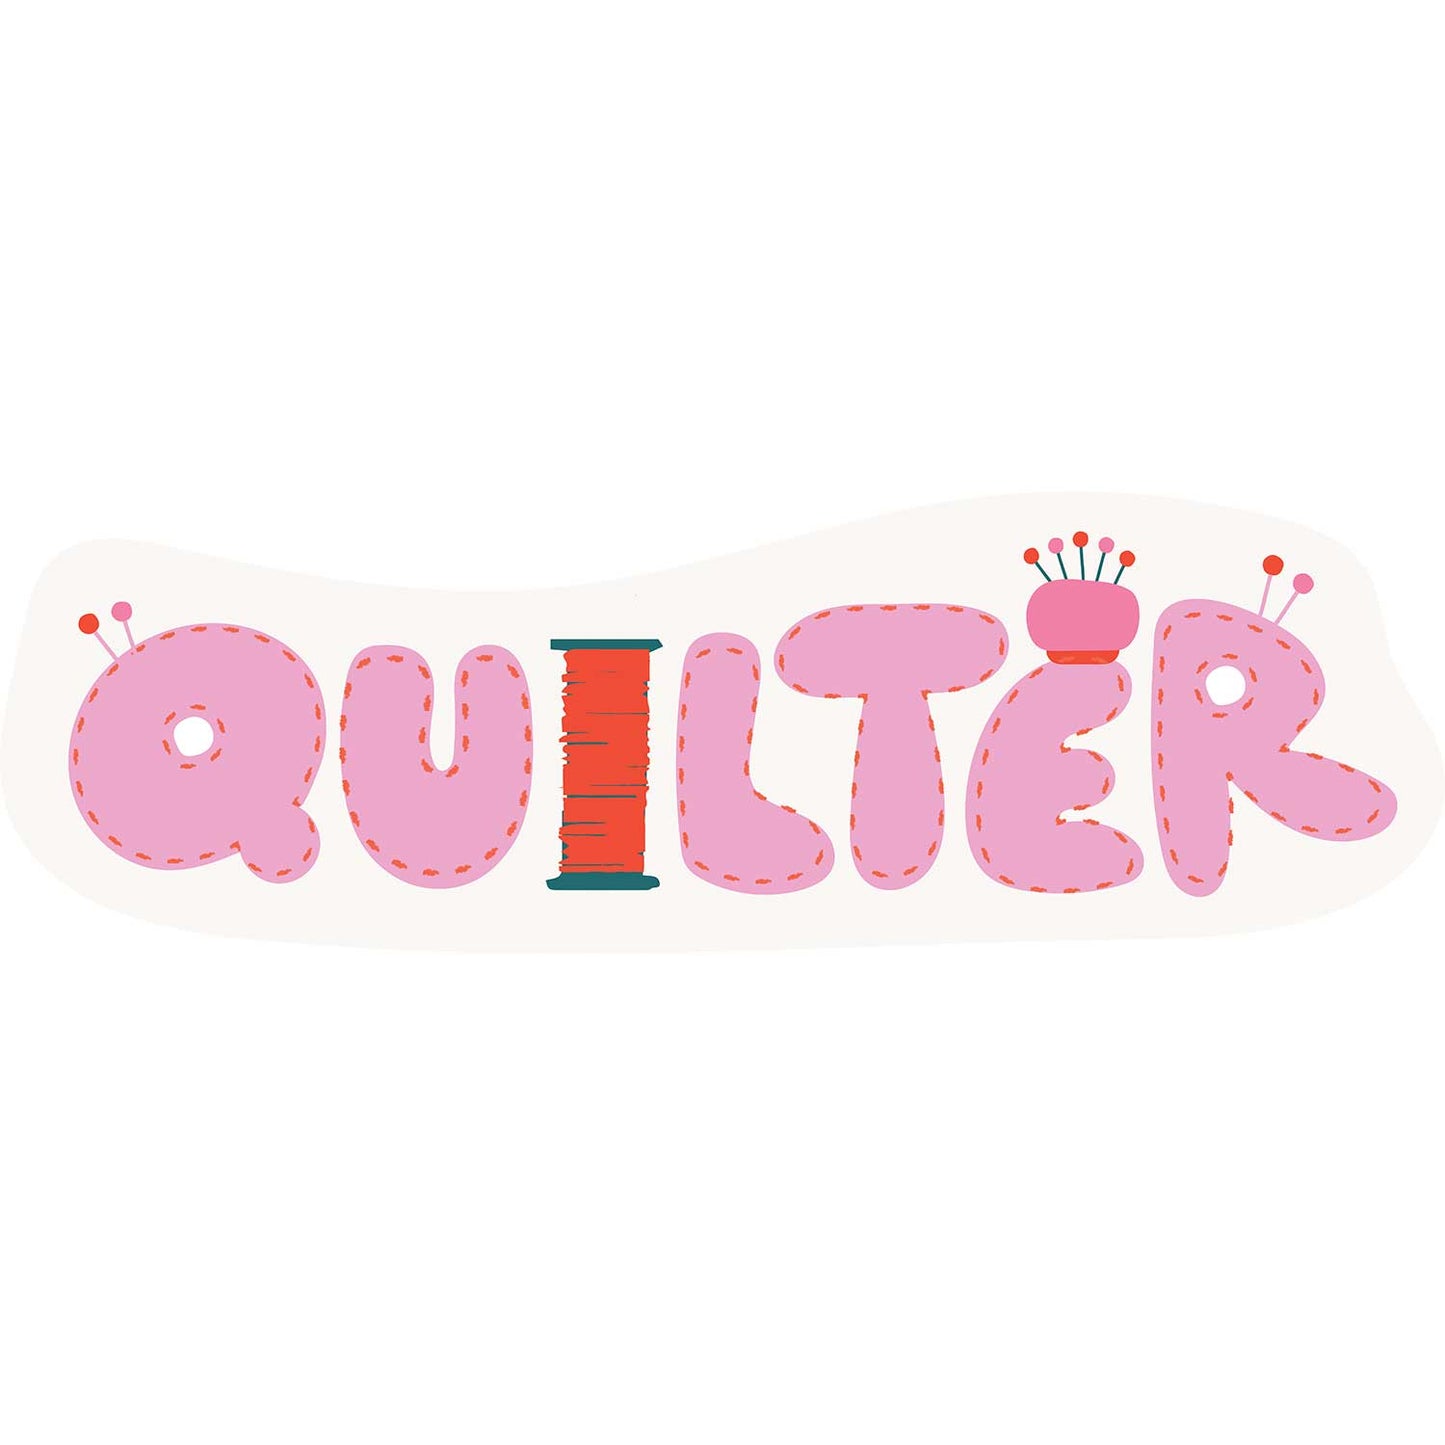 Quilter ✿ Sticker ✿ LQC Exclusive